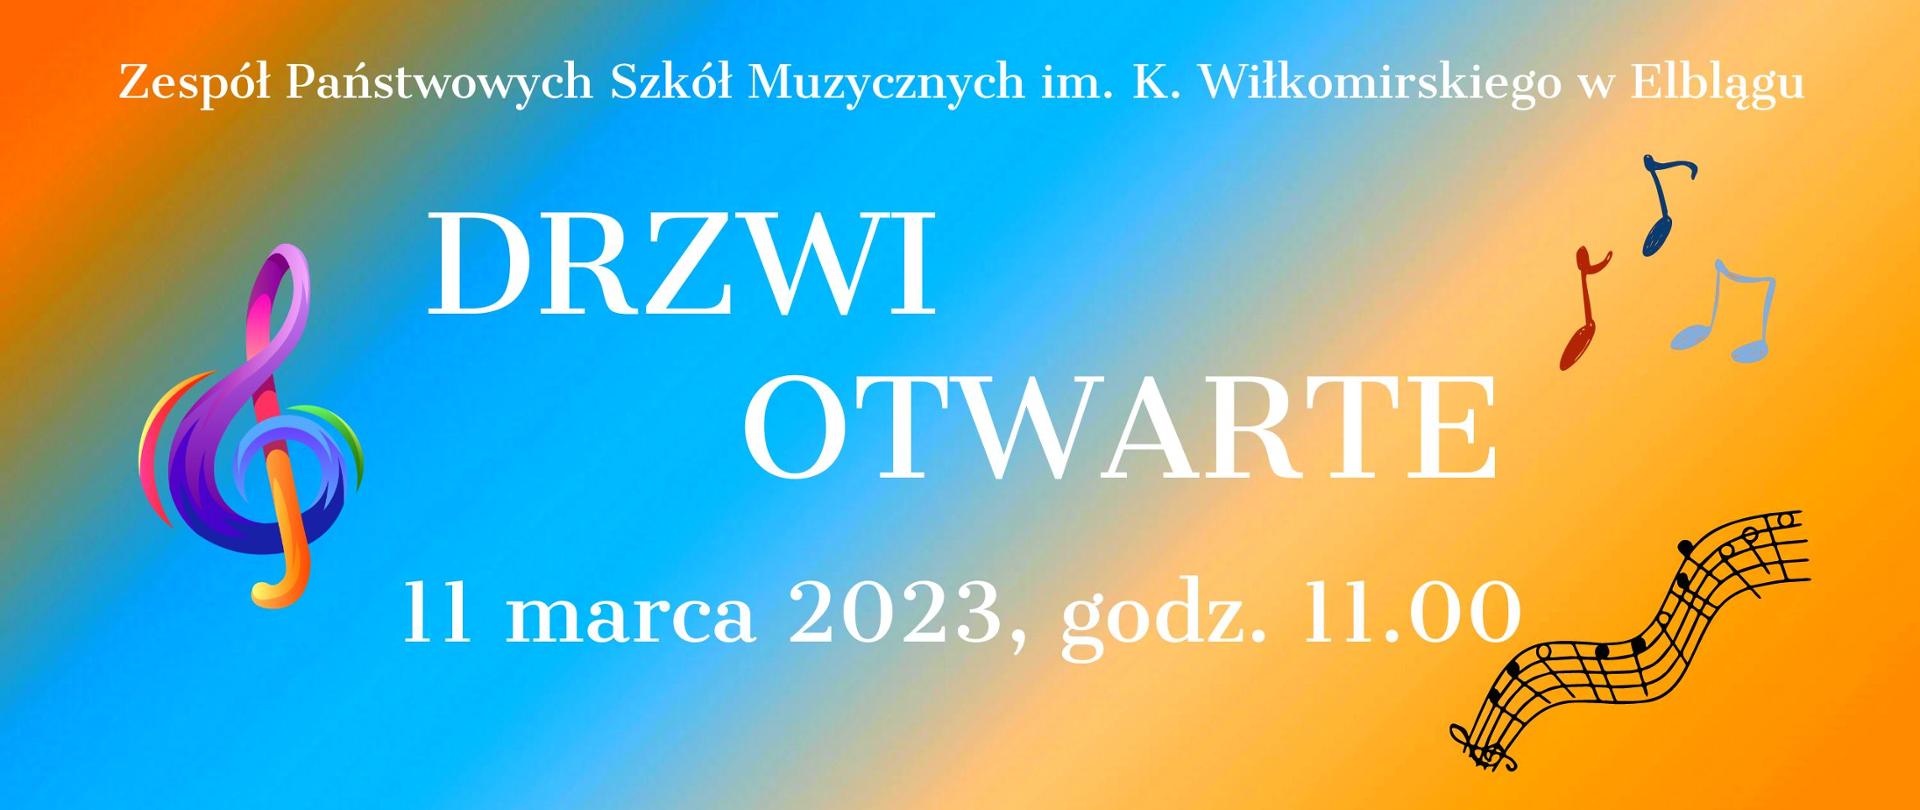 baner wypełniony gradientem z kolorowym kluczem wiolinowy, w górnej części napis Zespół Państwowych Szkół Muzycznych w Elblągu, w centralnej części Drzwi Otwarte 11 marca 2023, godz. 11.00